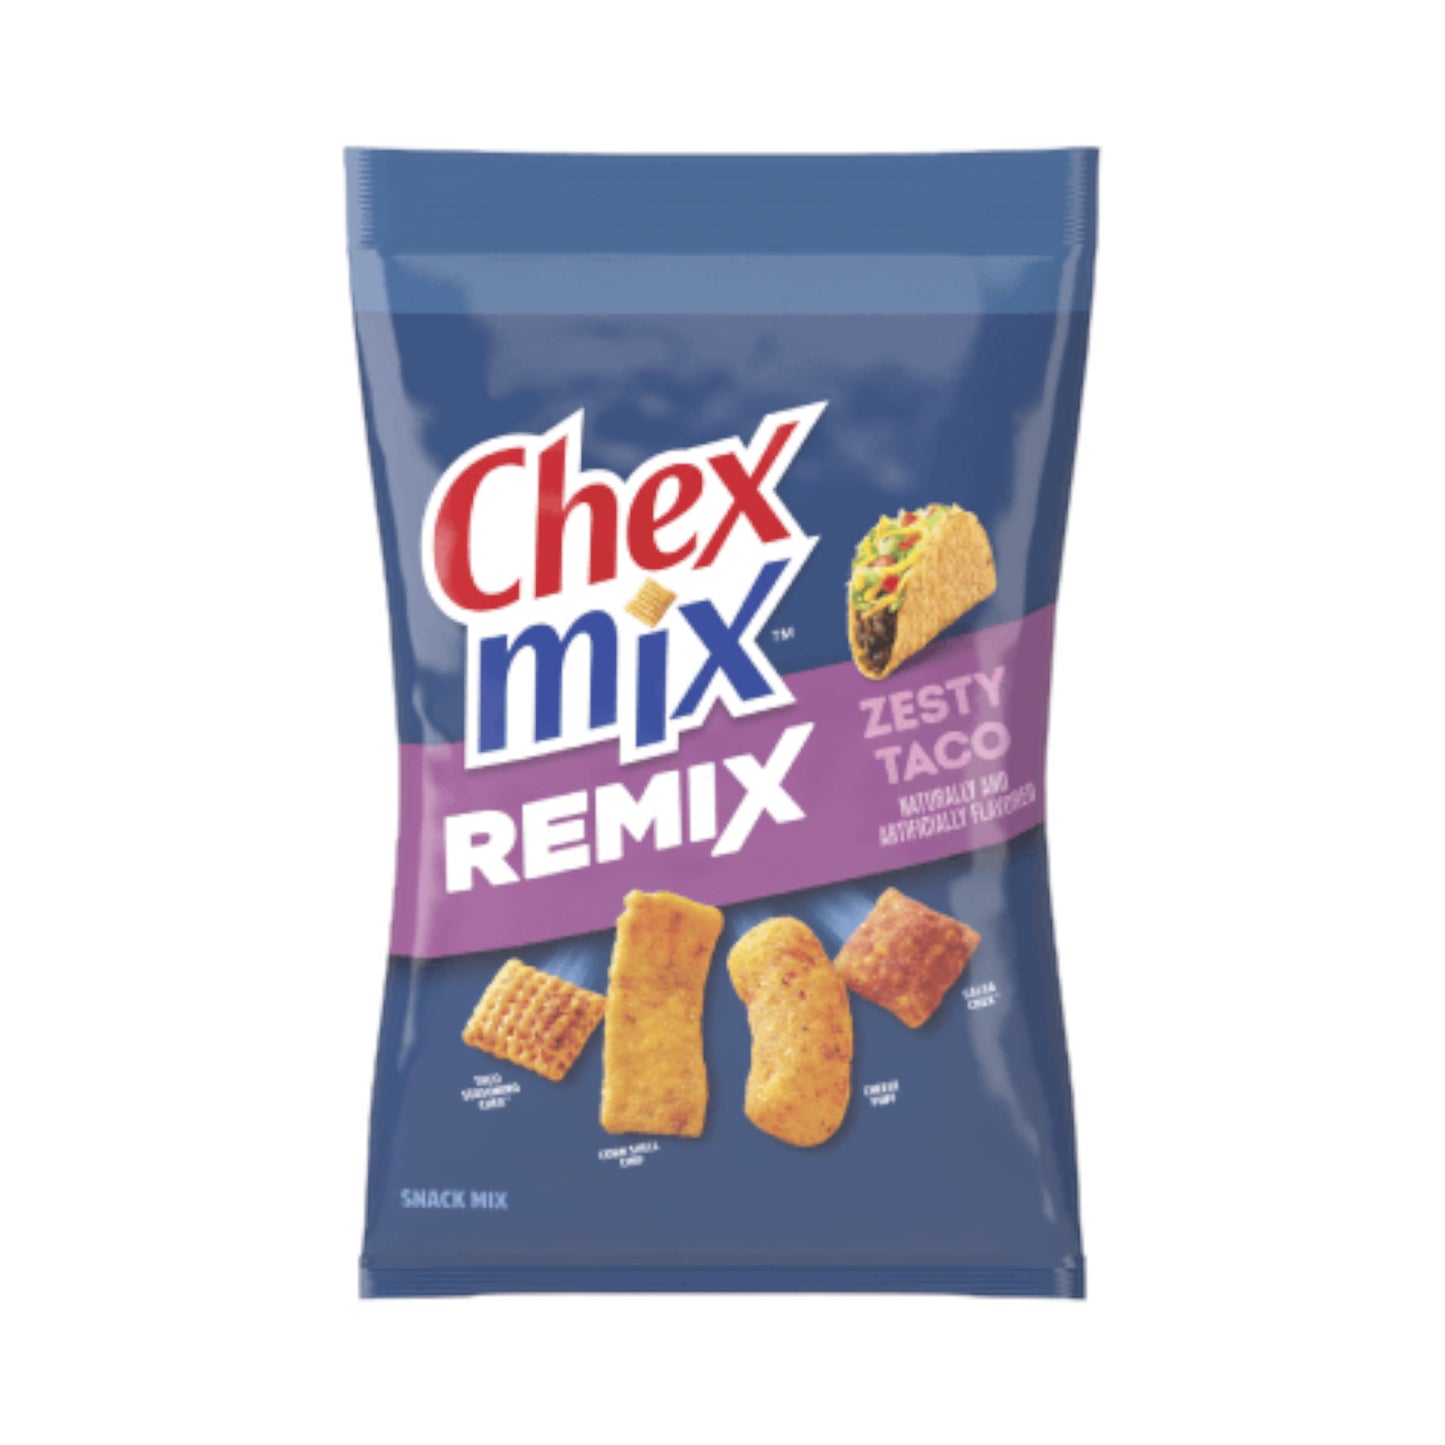 Chex Mix Remix Zesty Taco - 4.25oz (120g)